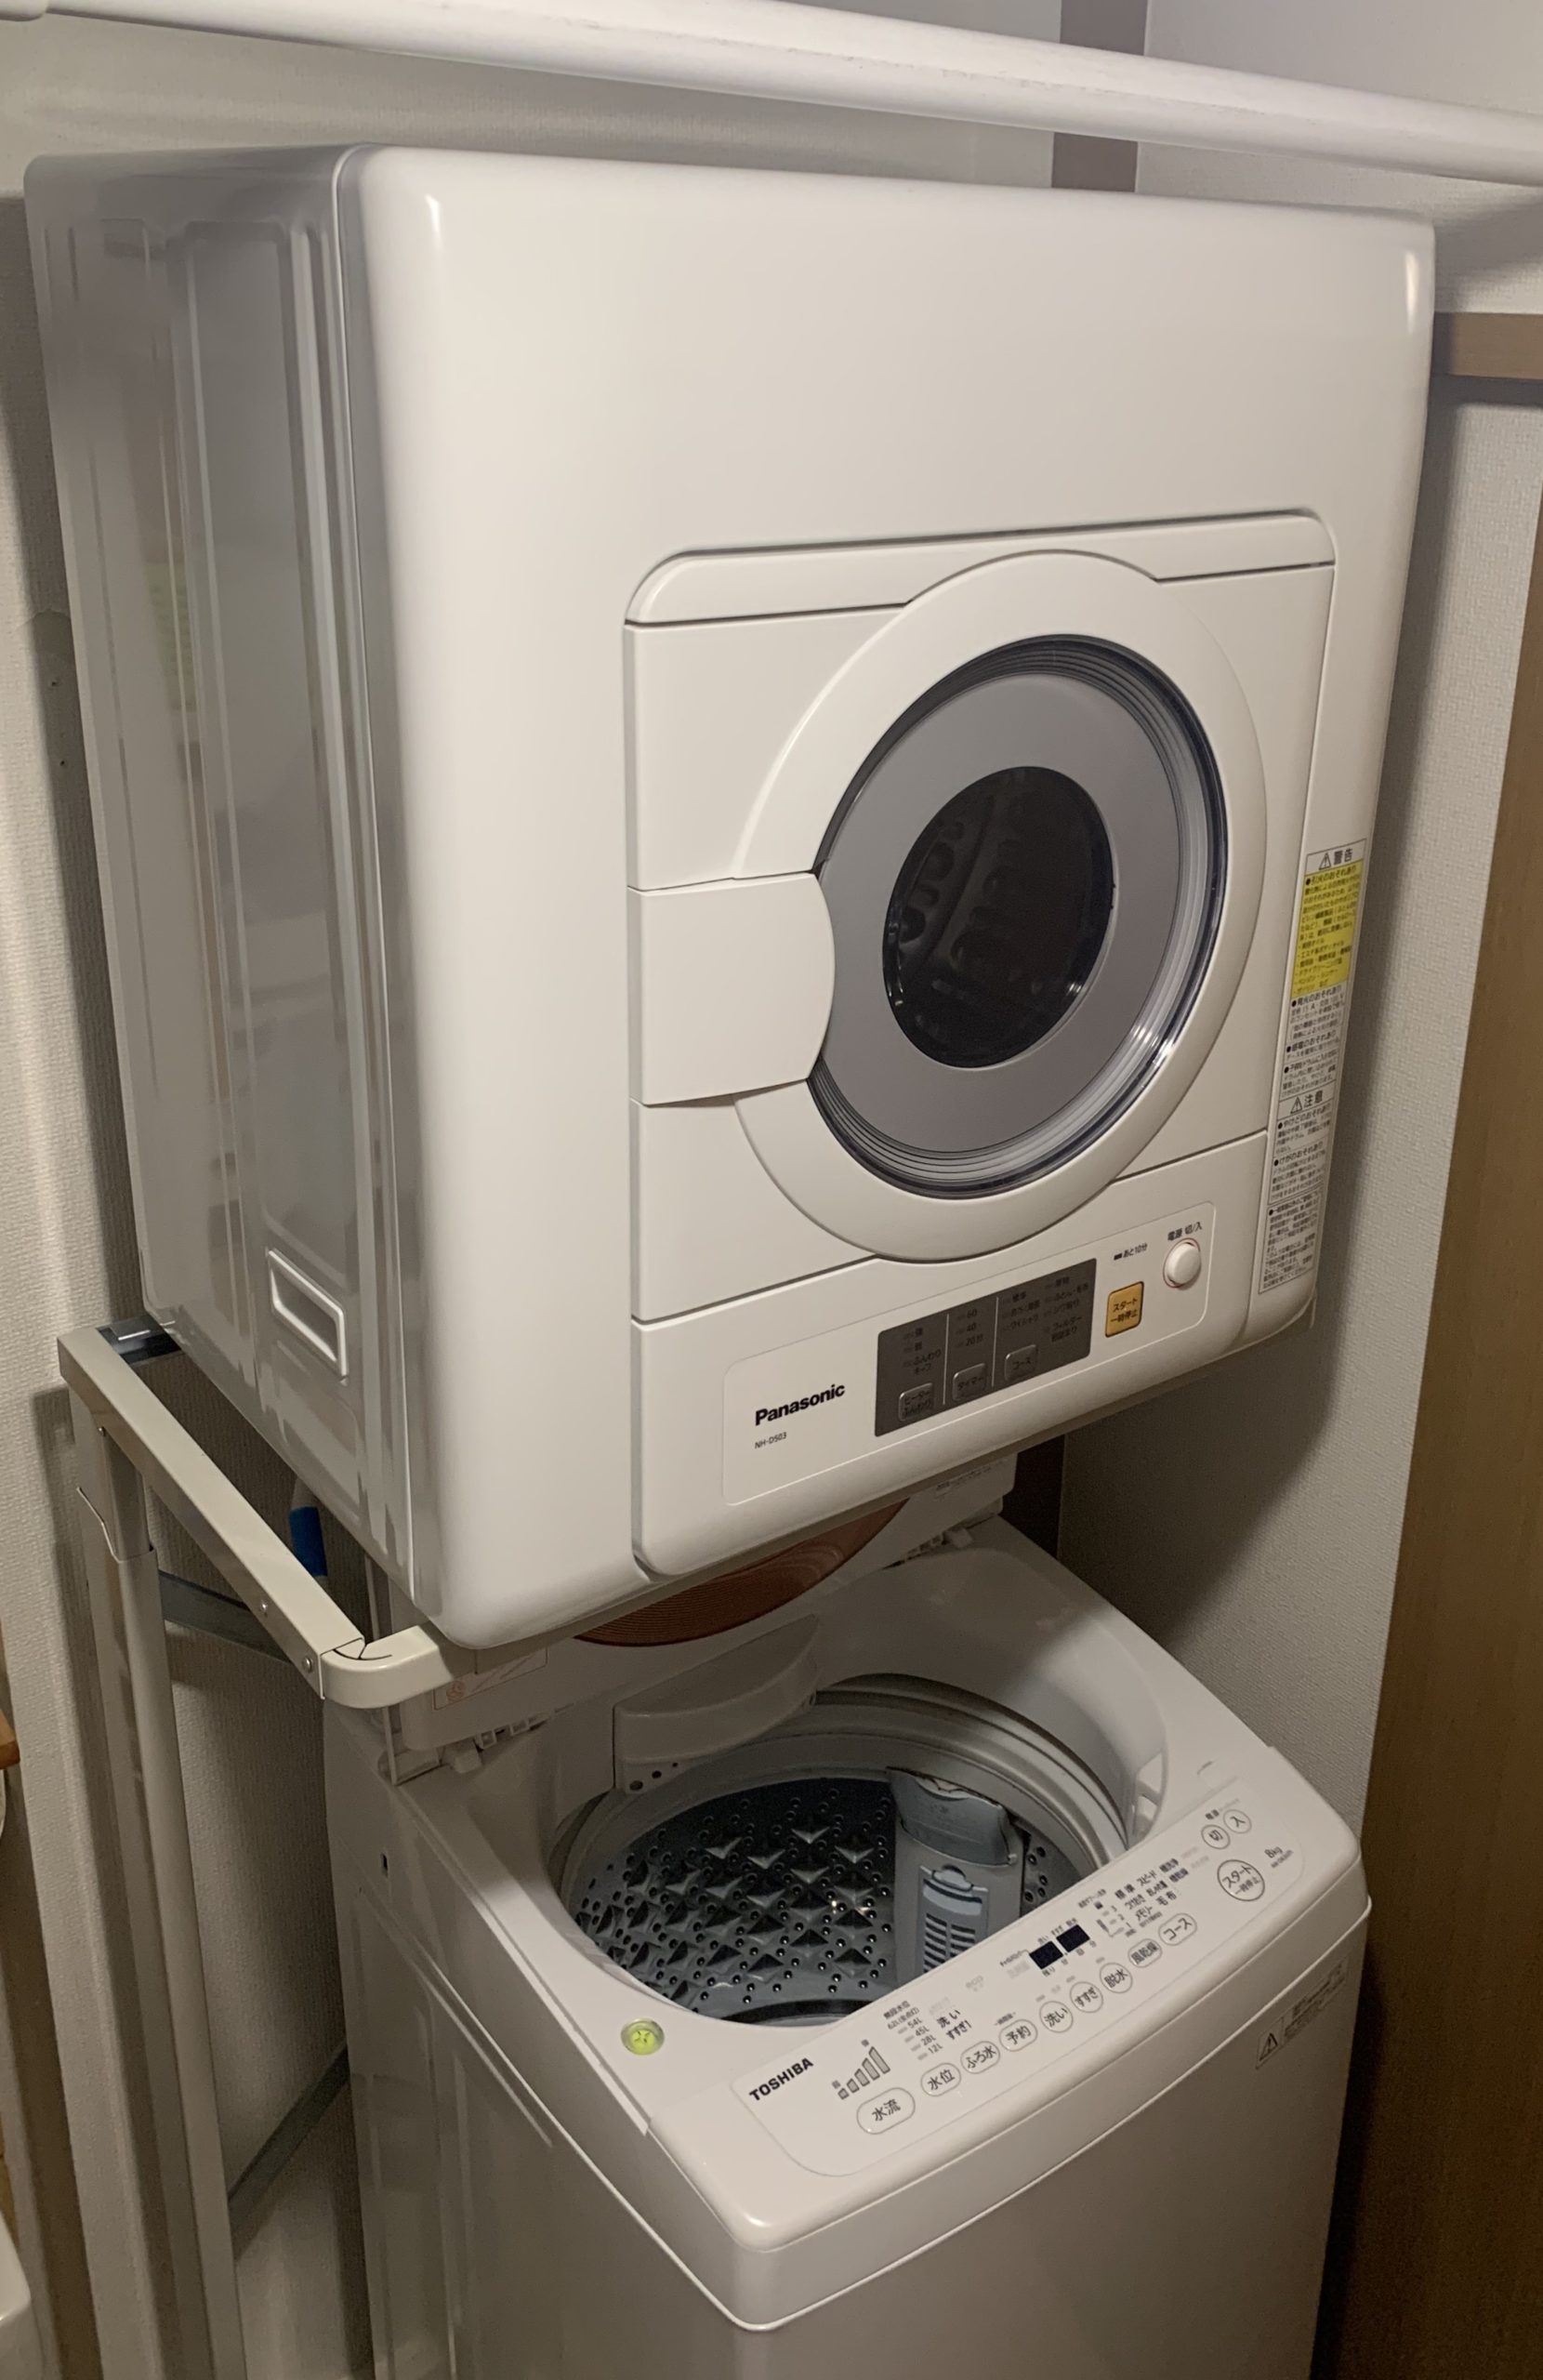 【良好品】  2019年式 NH-D503 衣類乾燥機 パナソニック K☆160 衣類乾燥機